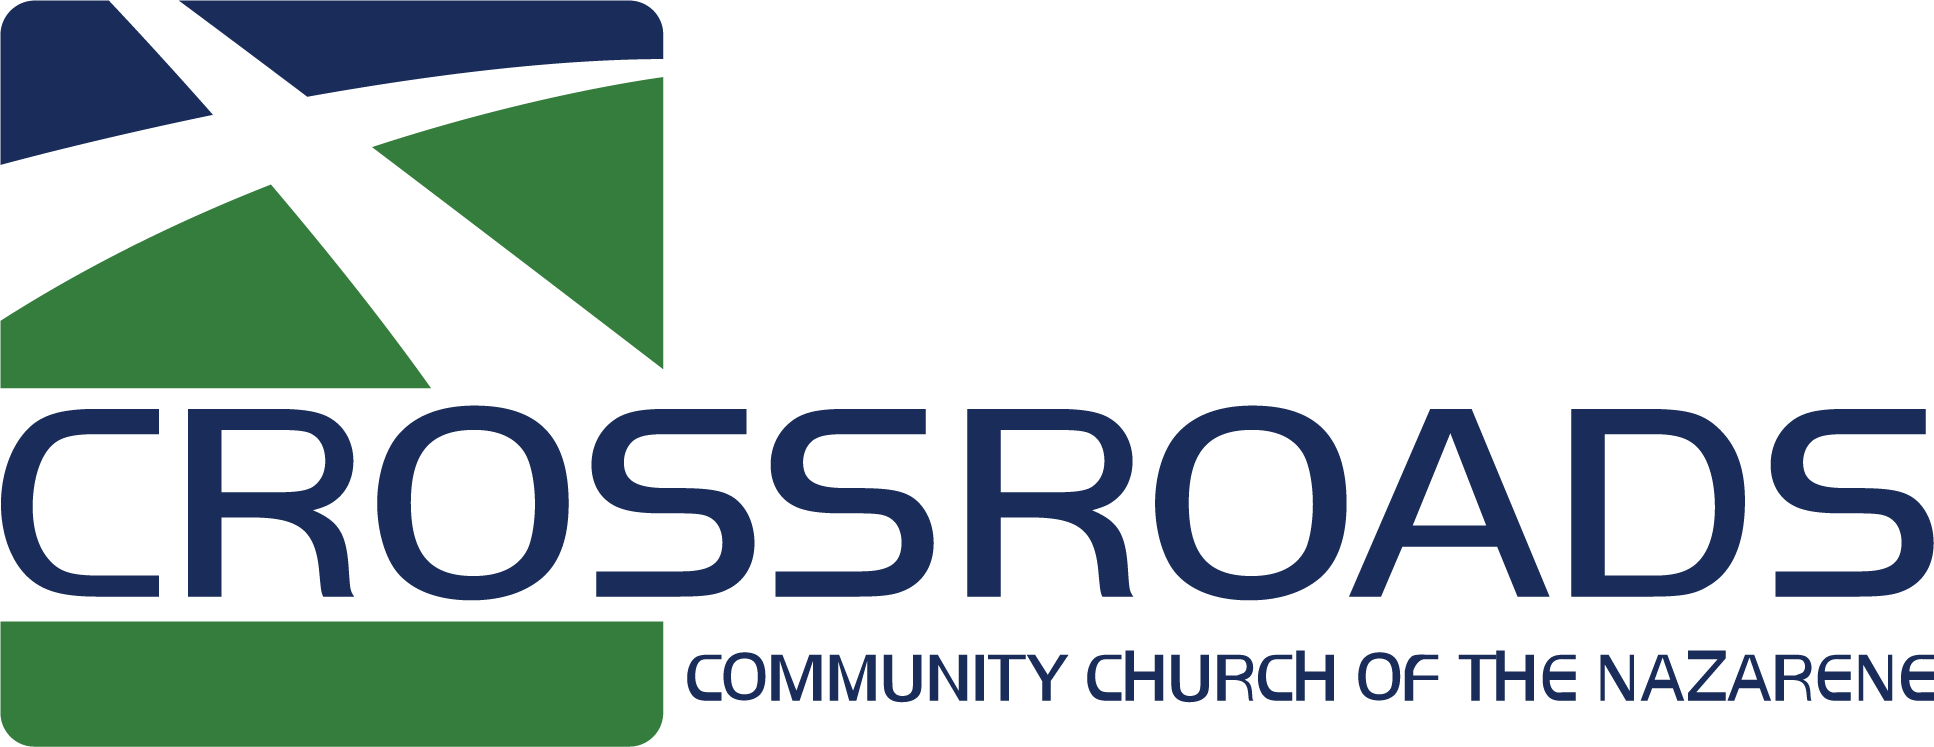 Crossroads Community